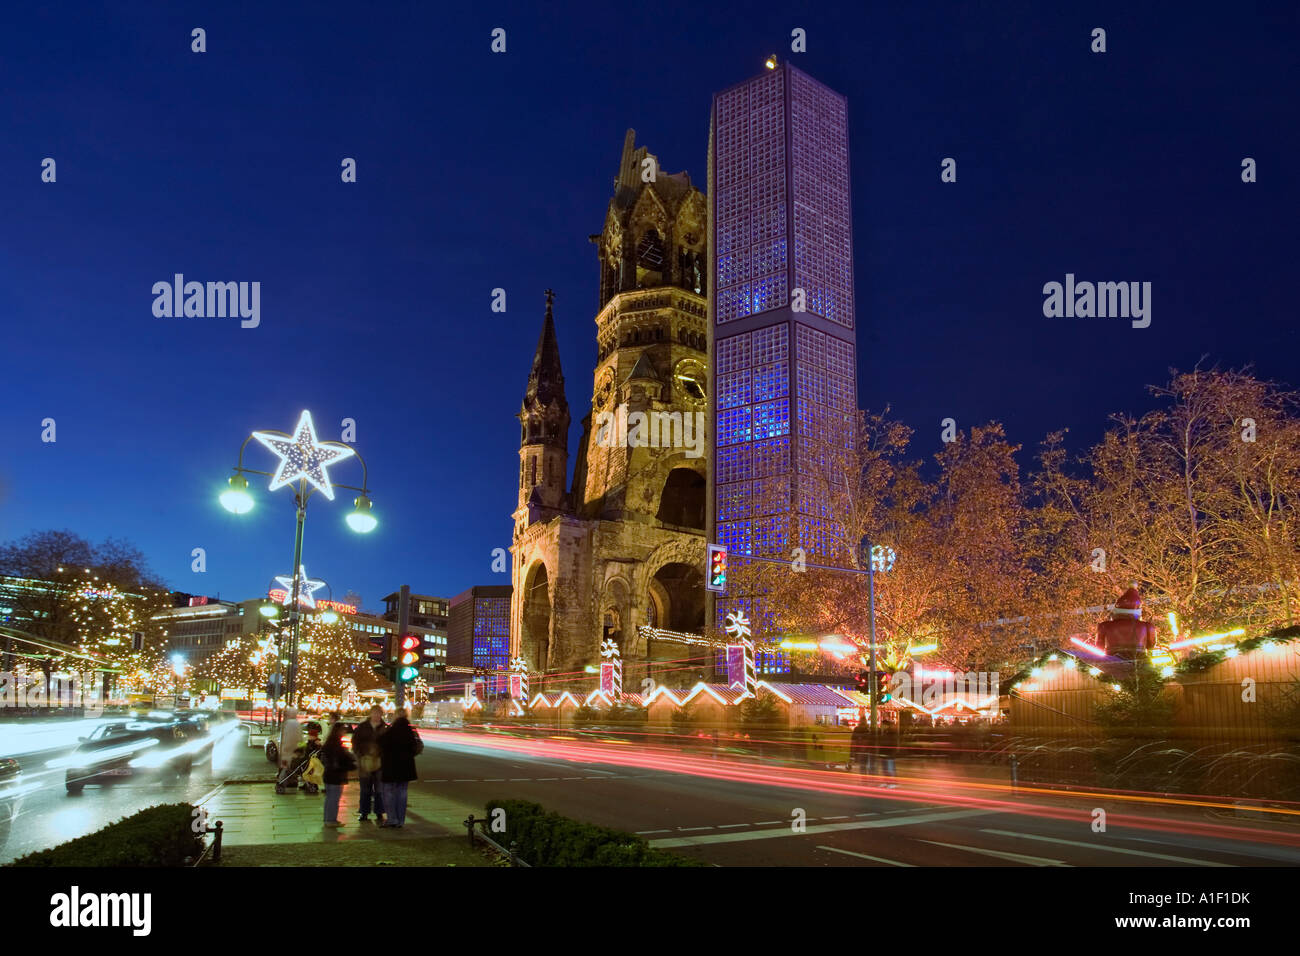 Marché de Noël de Berlin Kaiser Wilhelm l'église de la mémoire marché de Noël lumières au crépuscule Banque D'Images